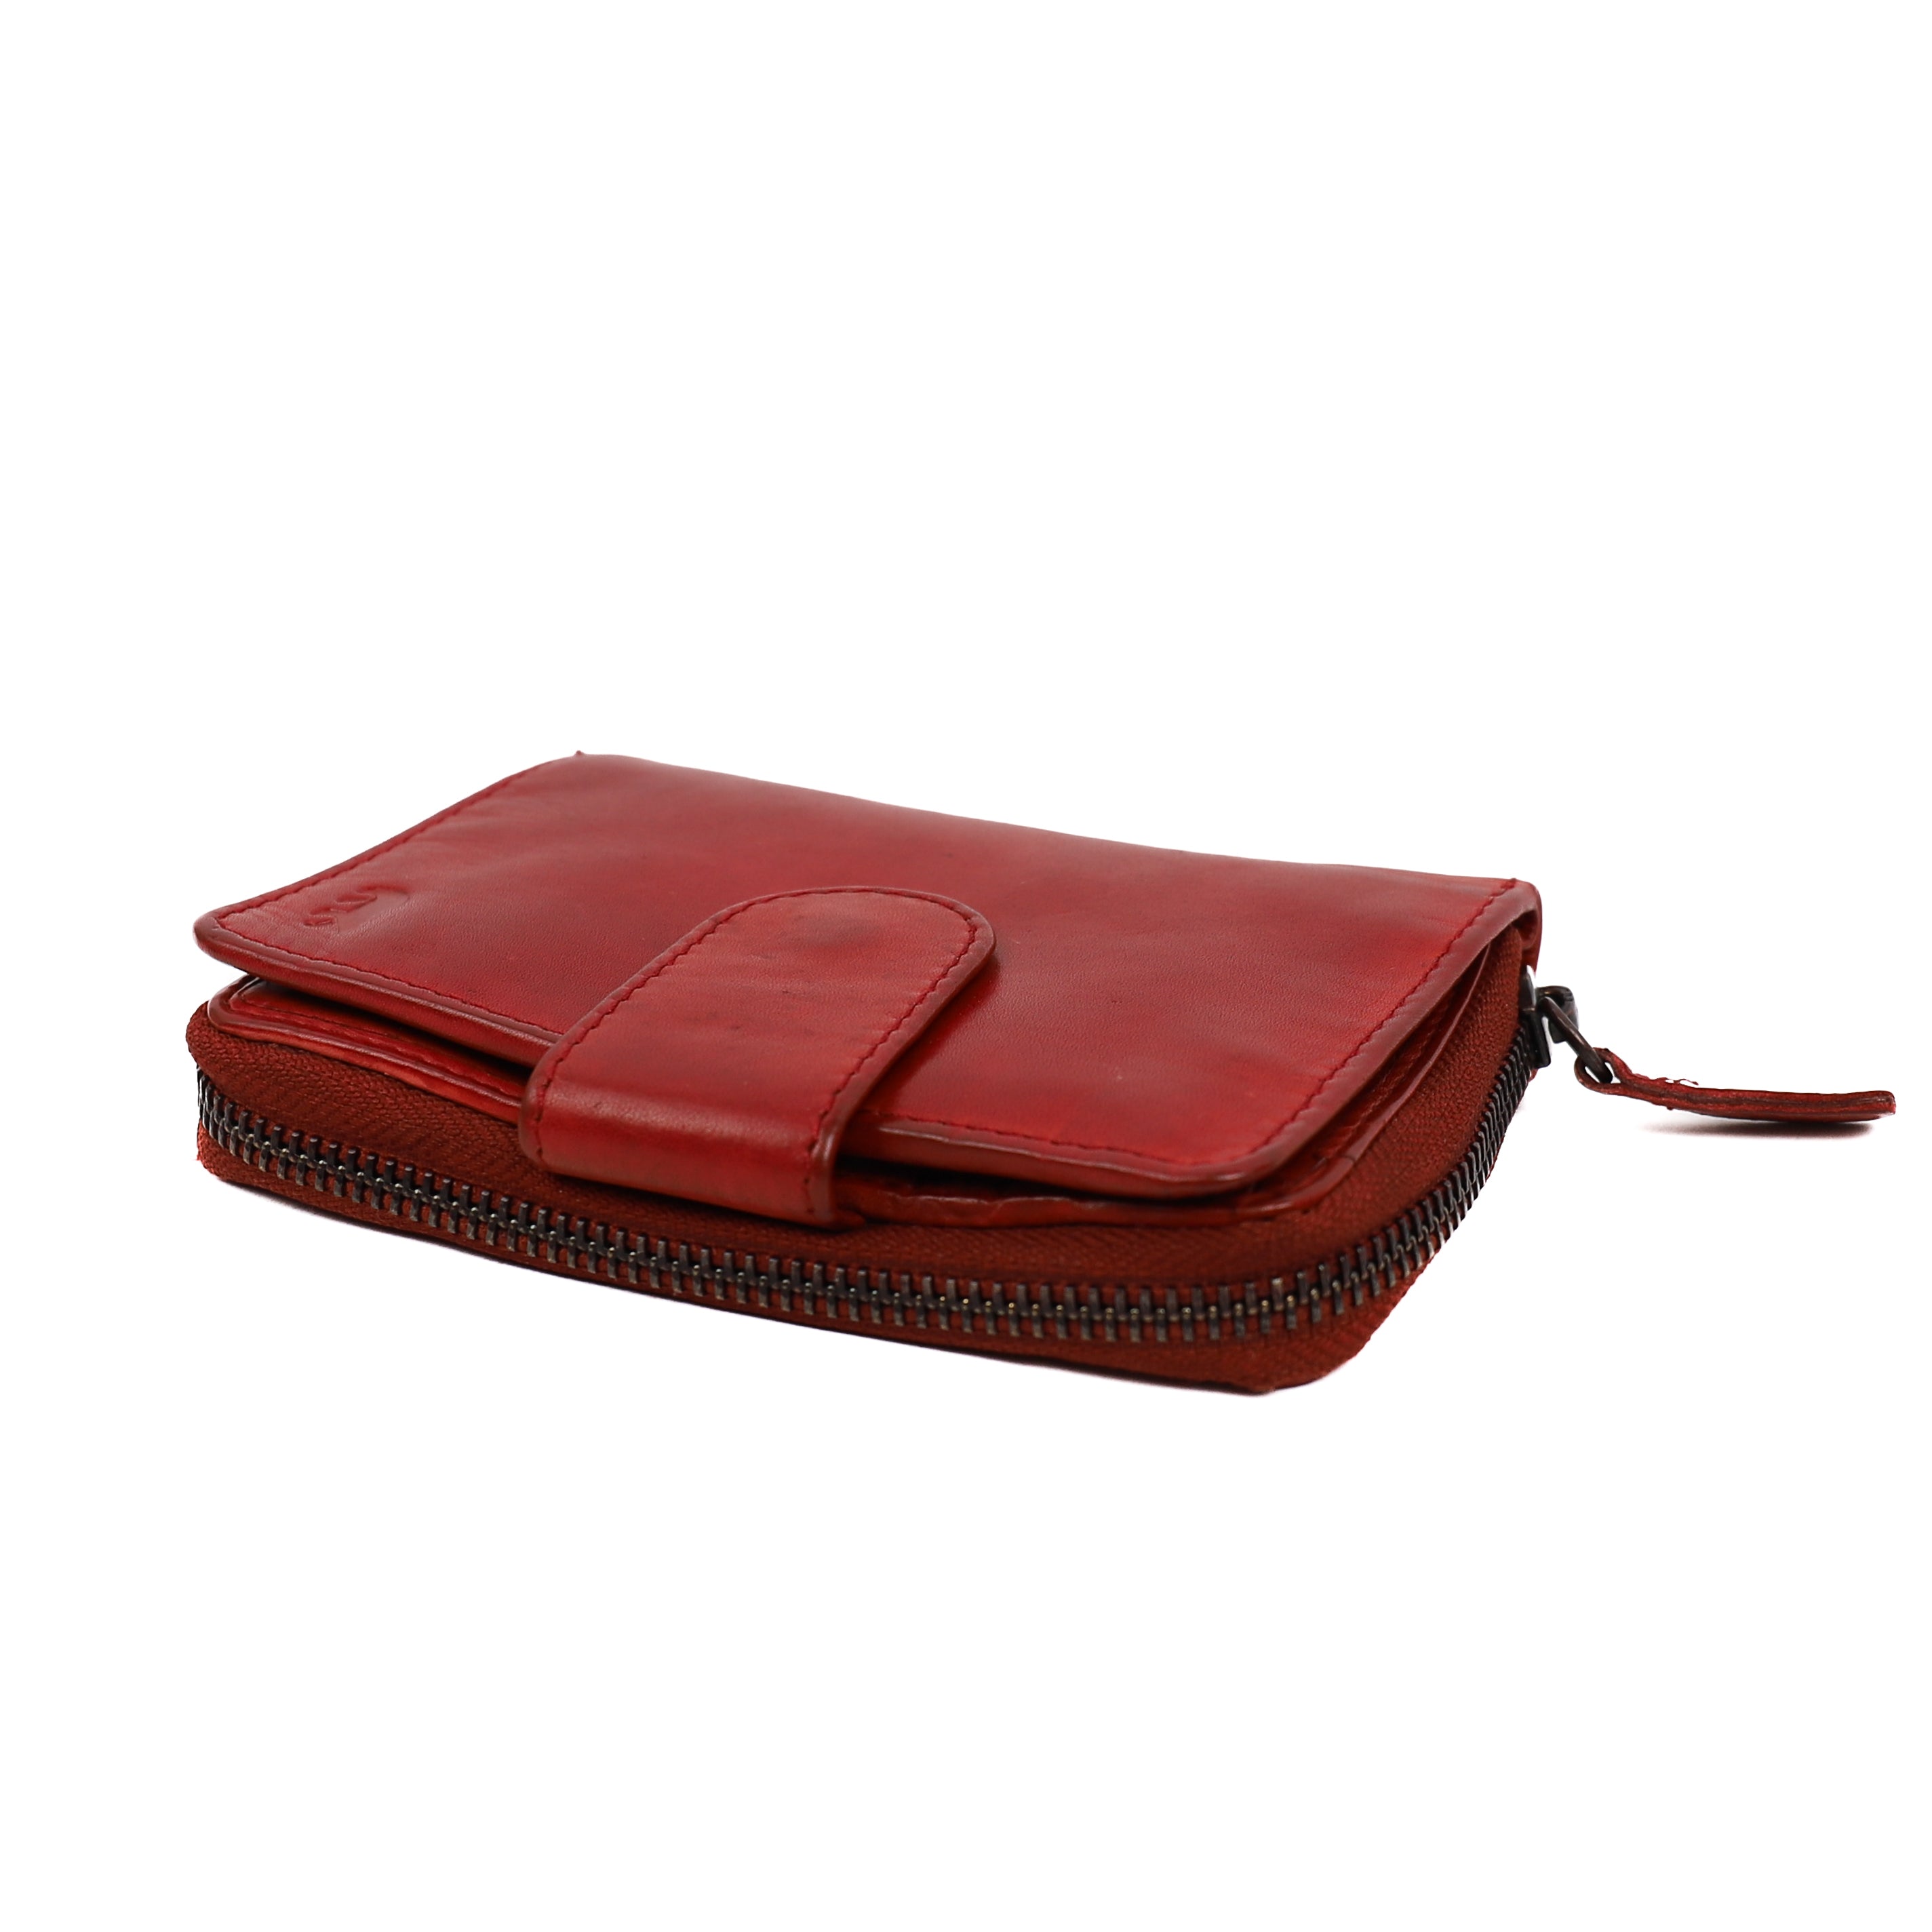 Zipper wallet 'Loet' red - CL 13550